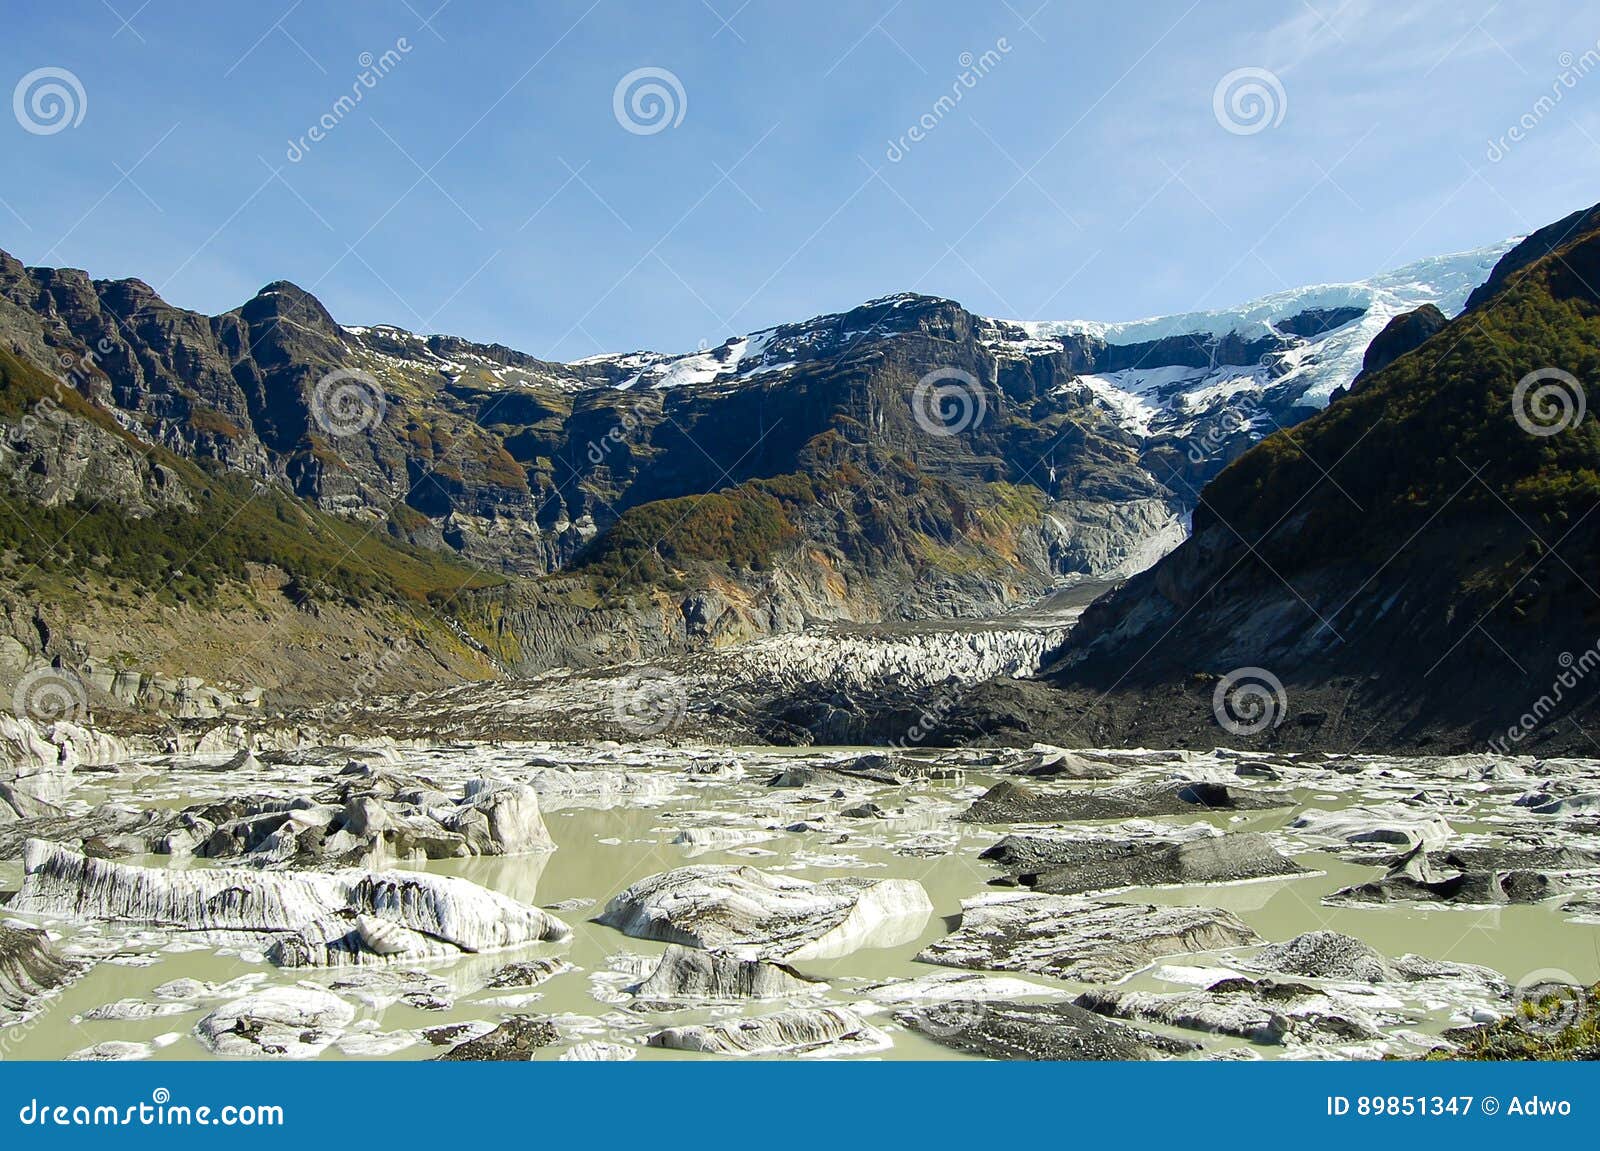 black glacier of mount tronador - bariloche - argentina